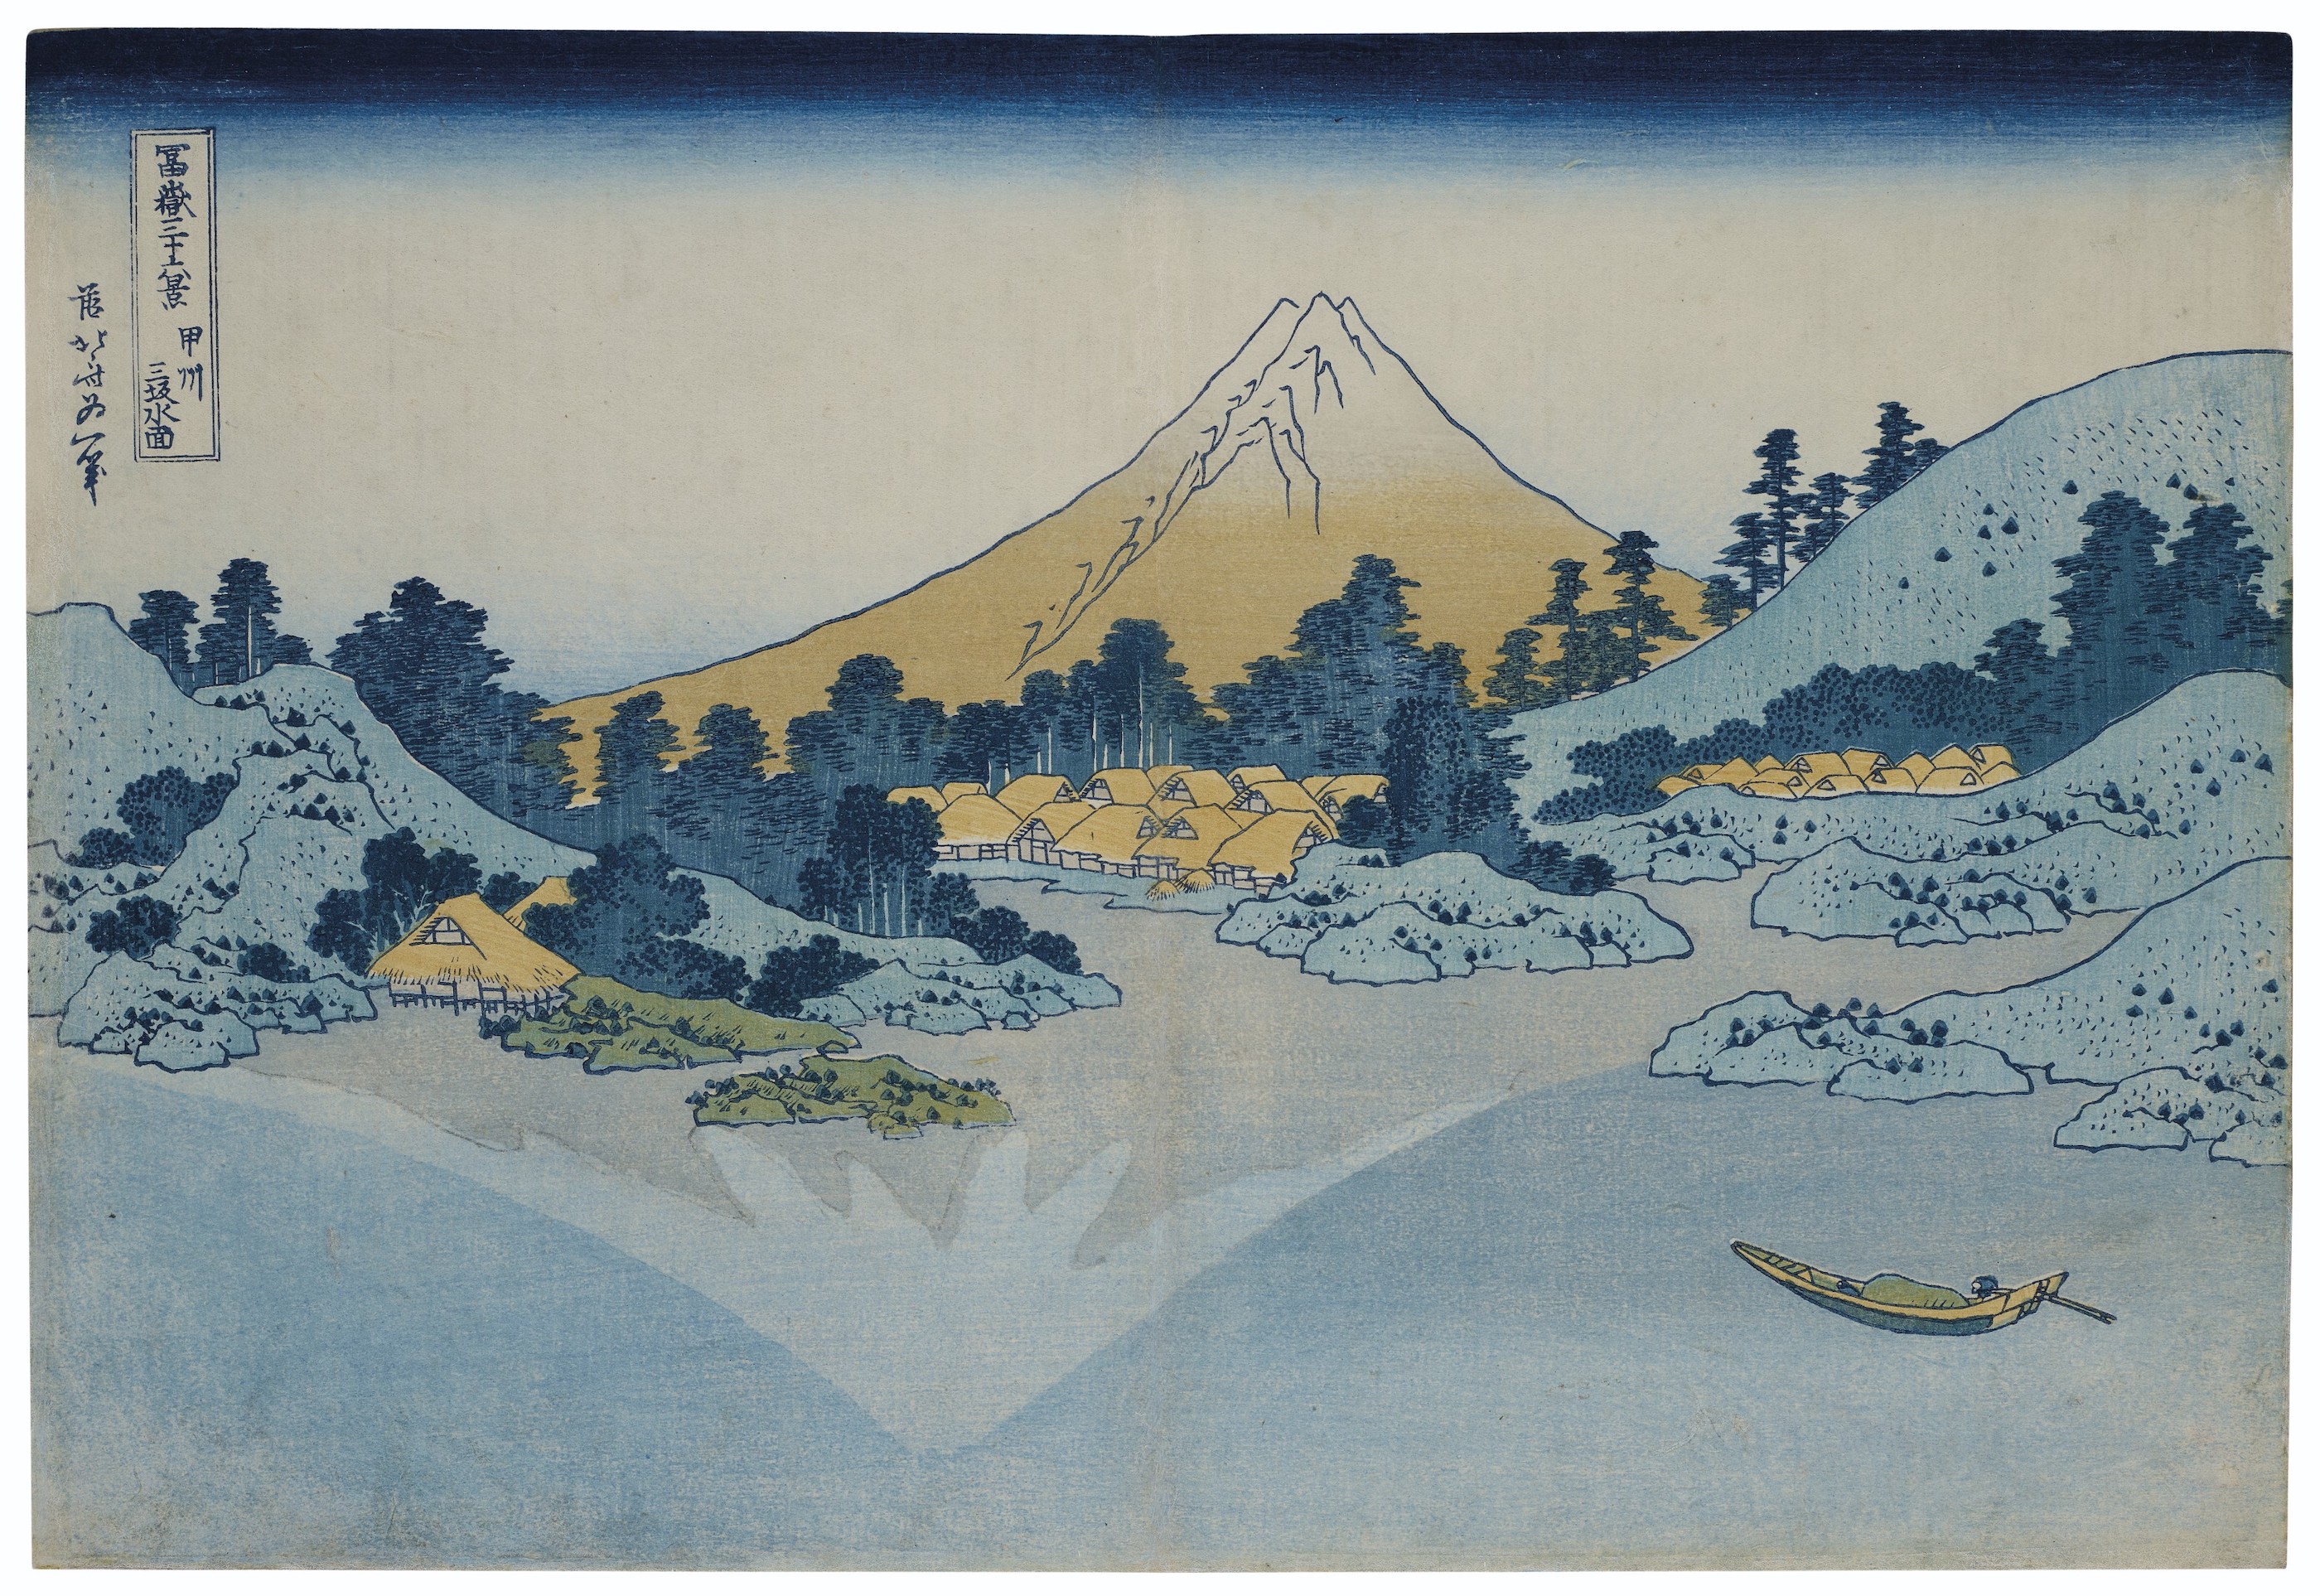 카이 지방 미사카 호수의 표면 (Surface of Lake Misaka, Kai Province) by Katsushika Hokusai - 1830-1832년경 - 25.4 x 37.5 cm 